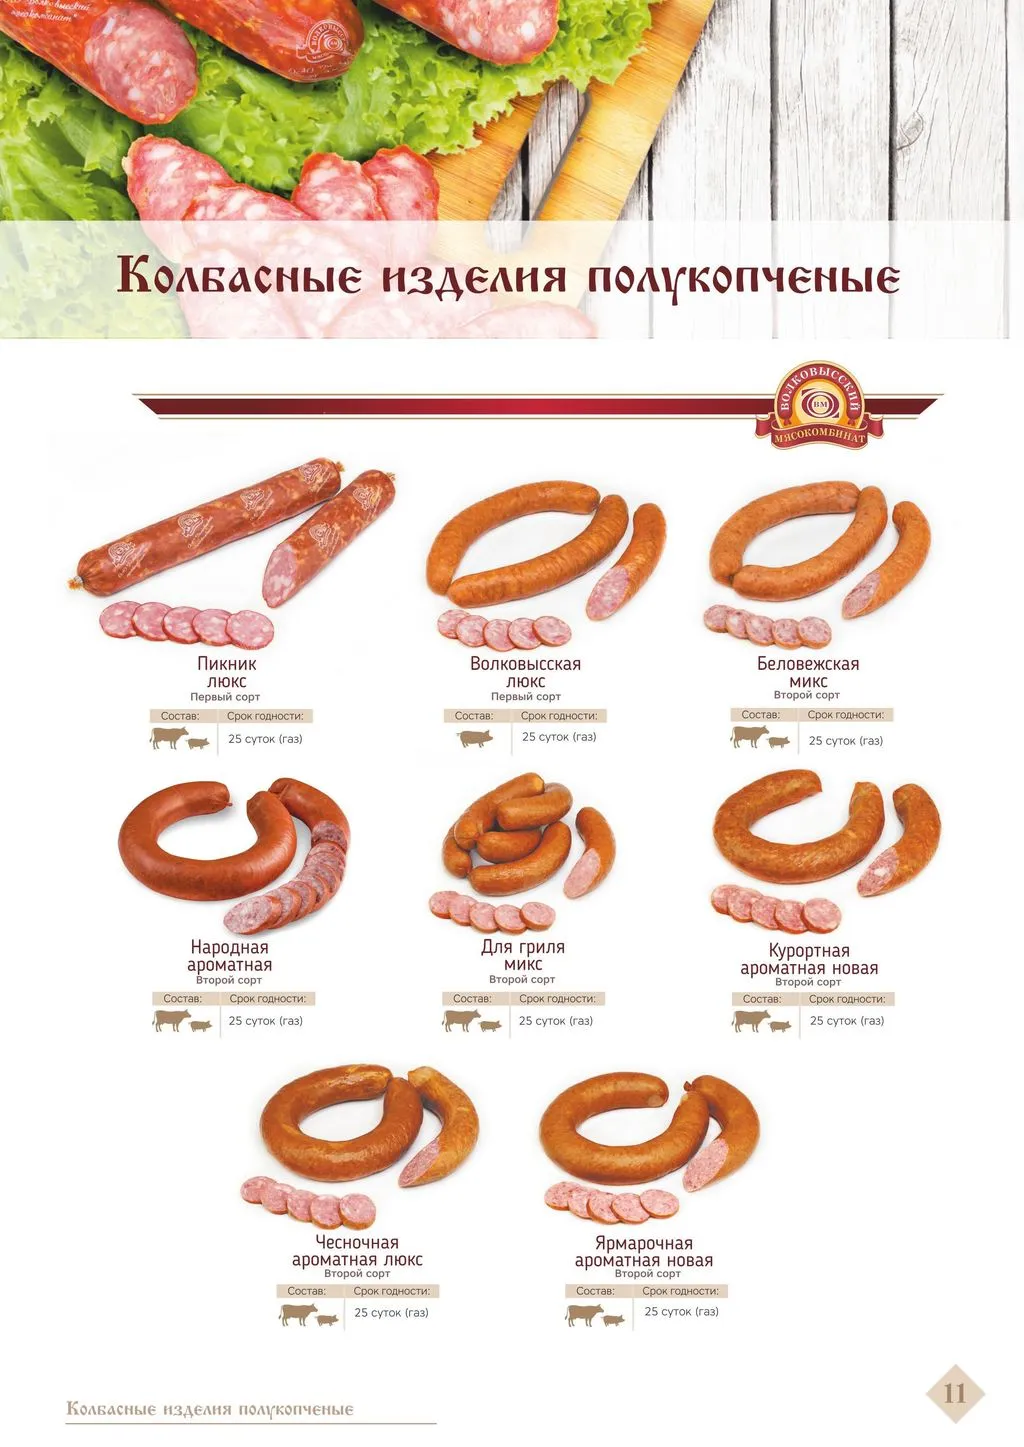  Реализует Белорусские колбасы в Москве